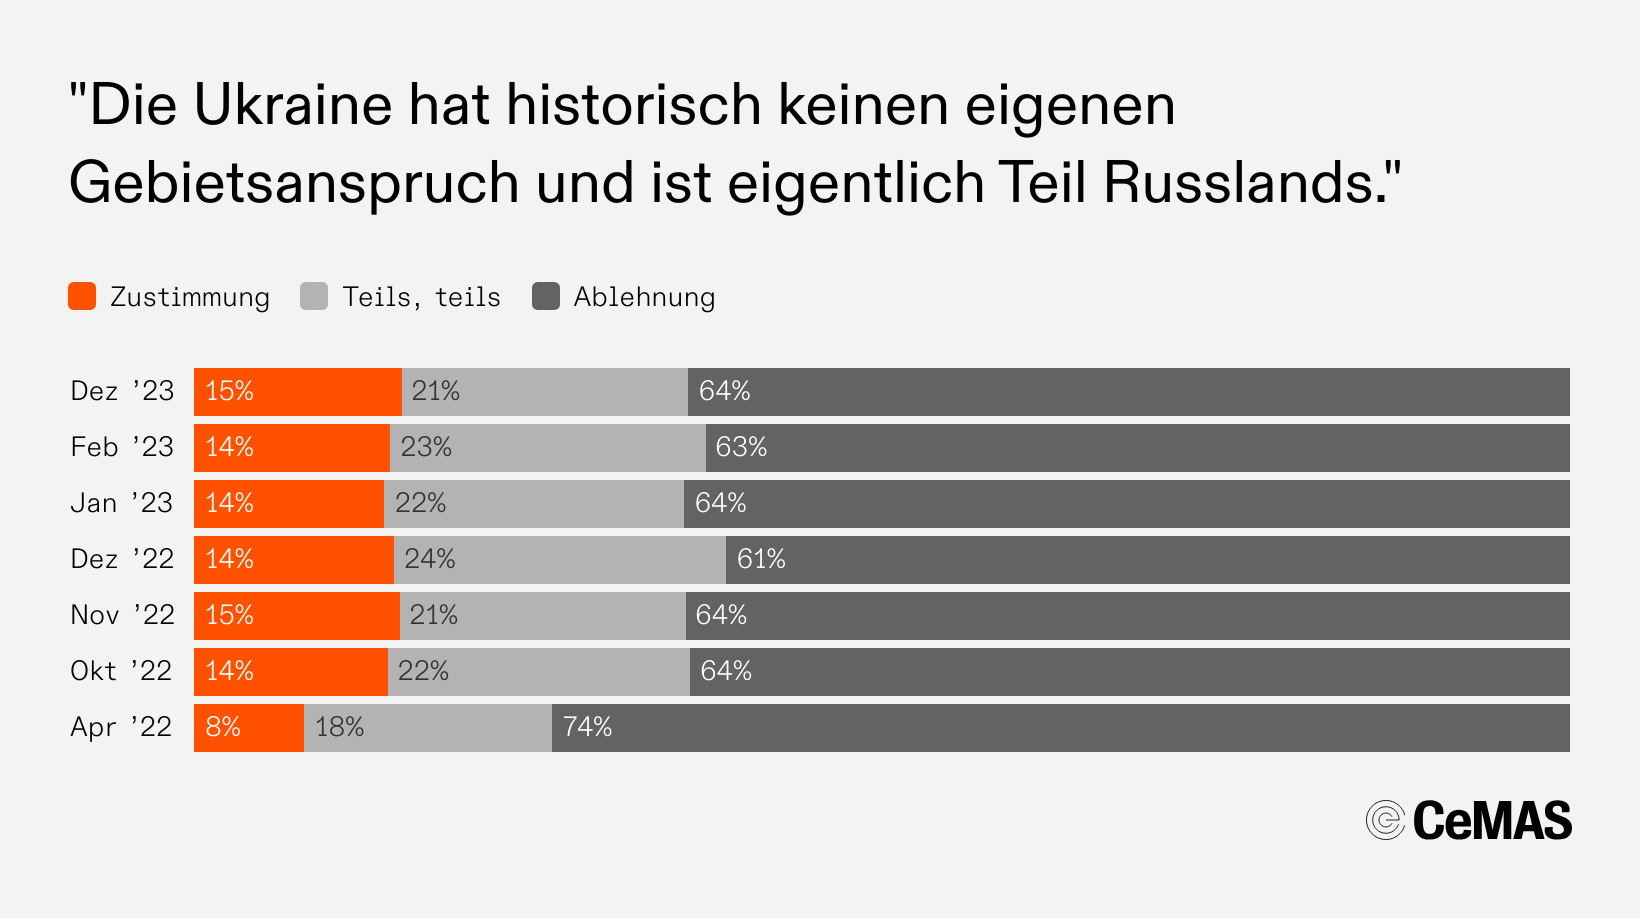 Zustimmungswerte zur Aussage „Die Ukraine hat historisch keinen eigenen Gebietsanspruch und ist eigentlich Teil Russlands“:
  Dez 23: Zustimmung 15 %, Teils teils 21 %, Ablehnung 64 %
  Feb 23: Zustimmung 14 %, Teils teils 23 %, Ablehnung 63 %
  Jan 23: Zustimmung 14 %, Teils teils 22 %, Ablehnung 63 %
  Dez 22: Zustimmung 14 %, Teils teils 24 %, Ablehnung 61 %
  Nov 22: Zustimmung 15 %, Teils teils 21 %, Ablehnung 64 %
  Okt 22: Zustimmung 14 %, Teils teils 22 %, Ablehnung 64 %
  Apr 22: Zustimmung  8 %, Teils teils 18 %, Ablehnung 74 %